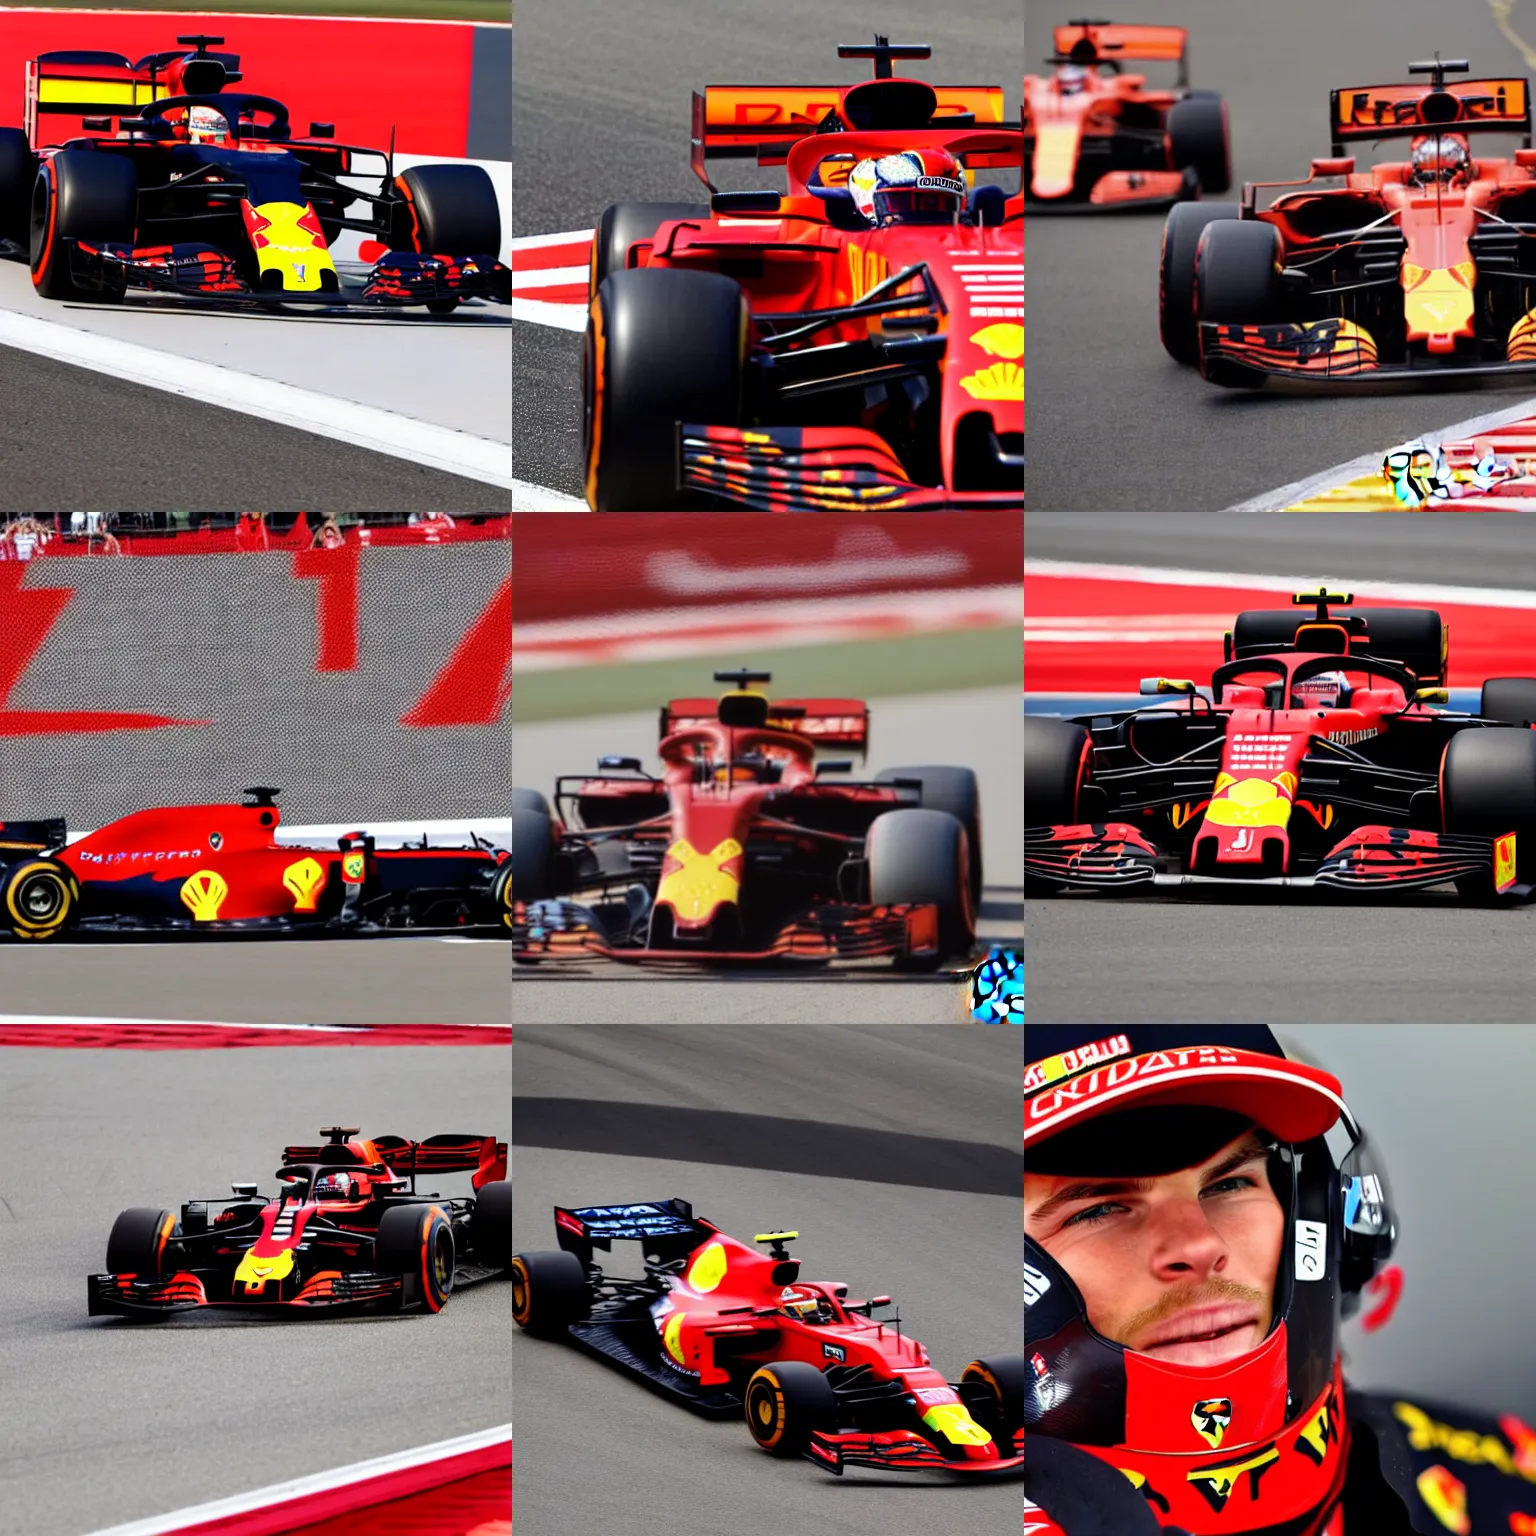 Prompt: Max Verstappen driving for Ferrari F1 team